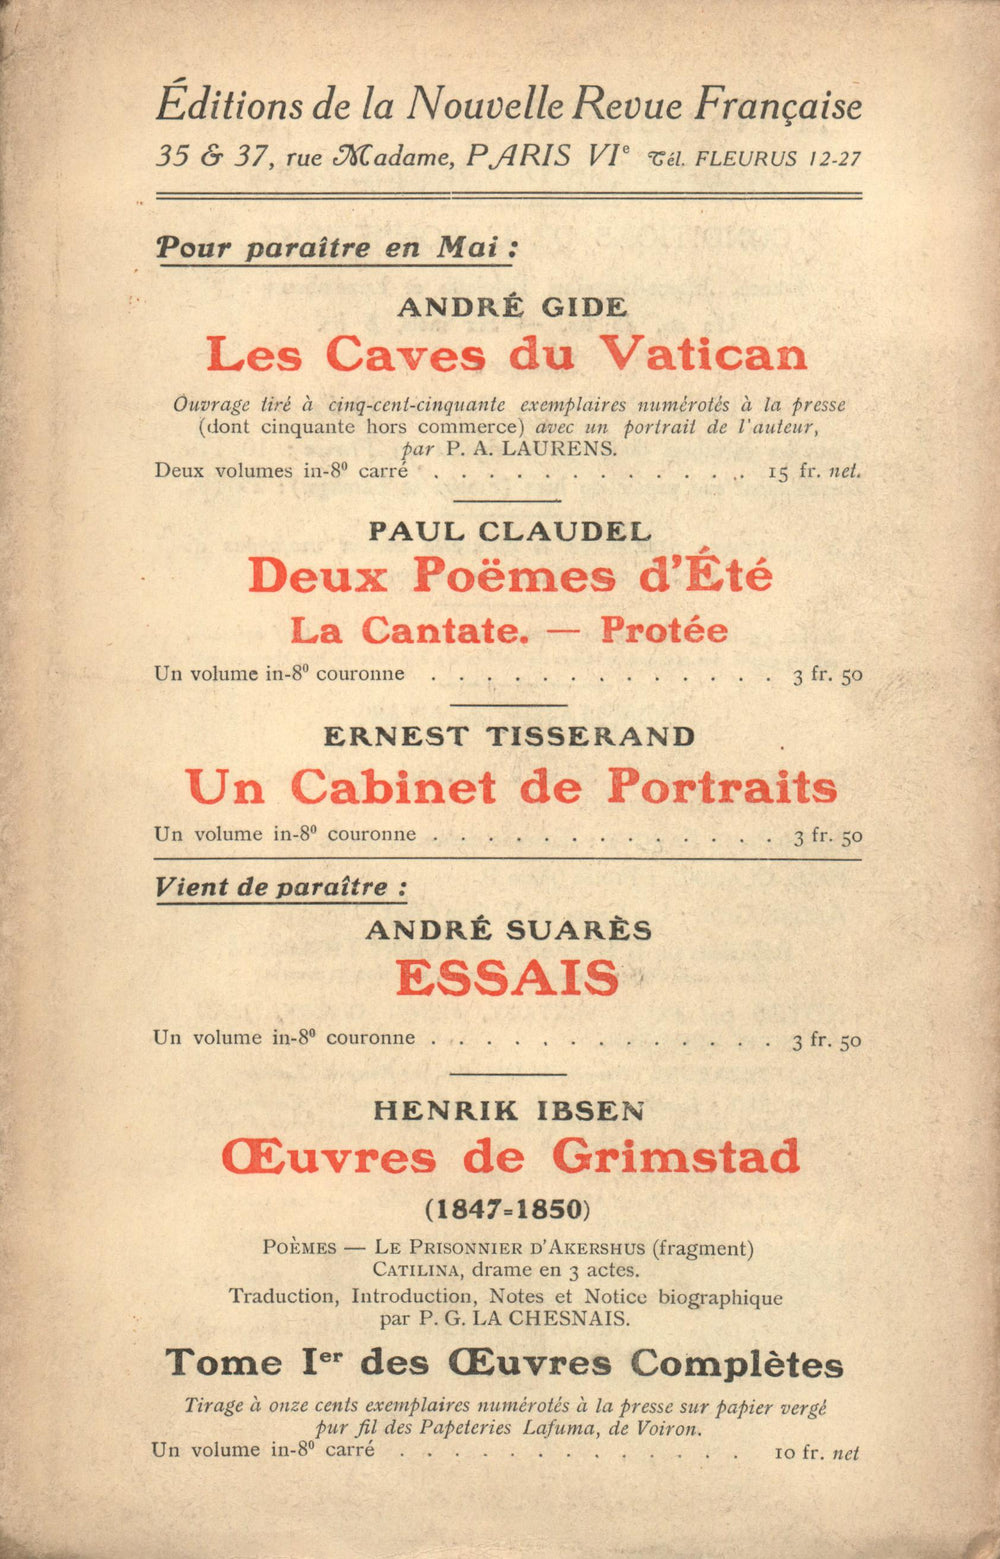 La Nouvelle Revue Française N' 65 (Mai 1914)